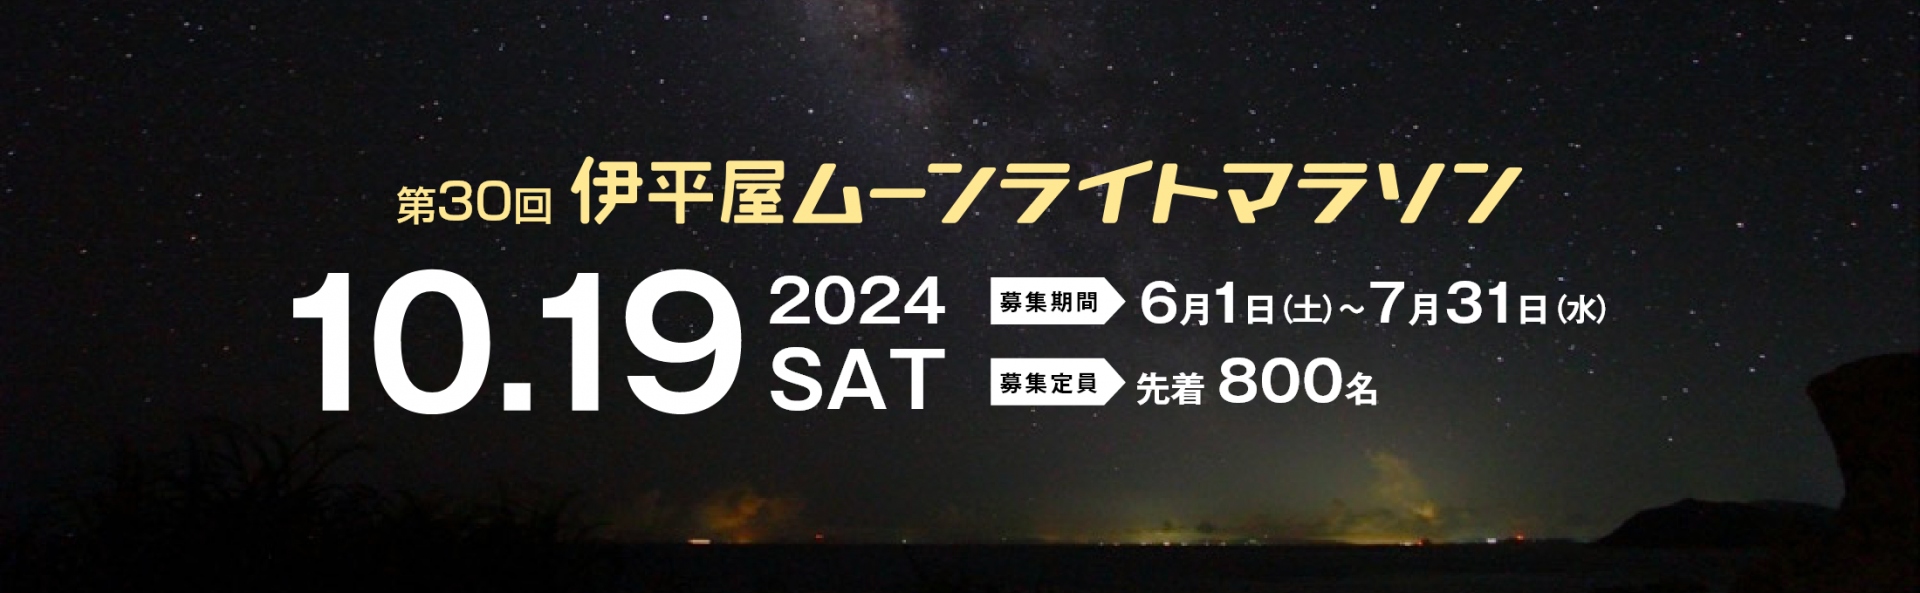 伊平屋ムーンライトマラソン 2024【公式】